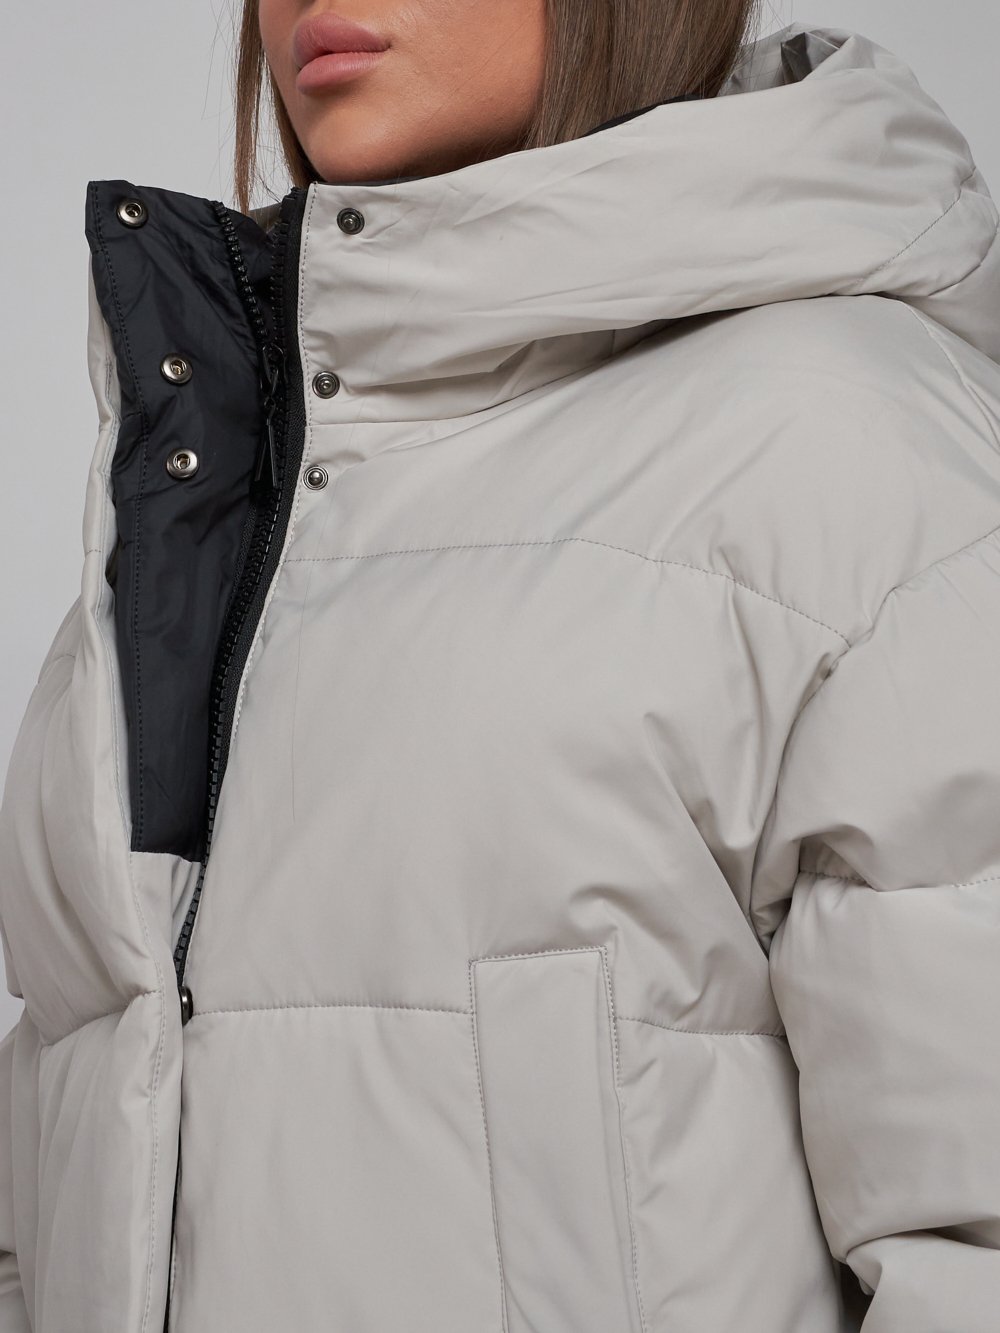 Купить куртку зимнюю оптом от производителя недорого в Москве 52309SS 1